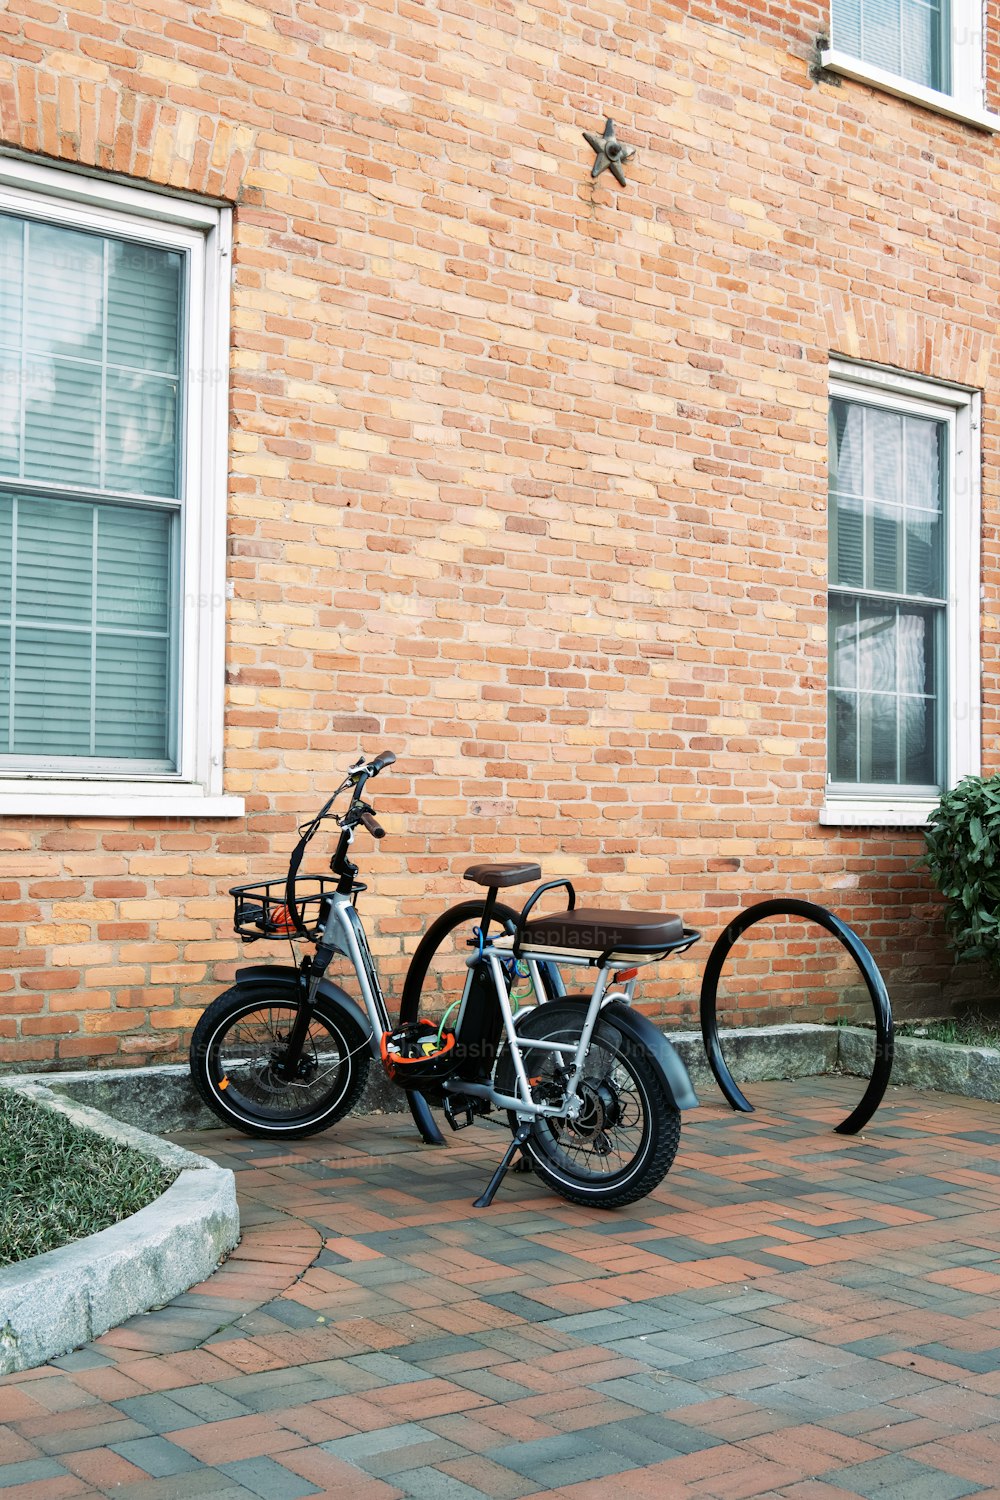 벽돌 건물 옆에 주차 된 두 대의 자전거